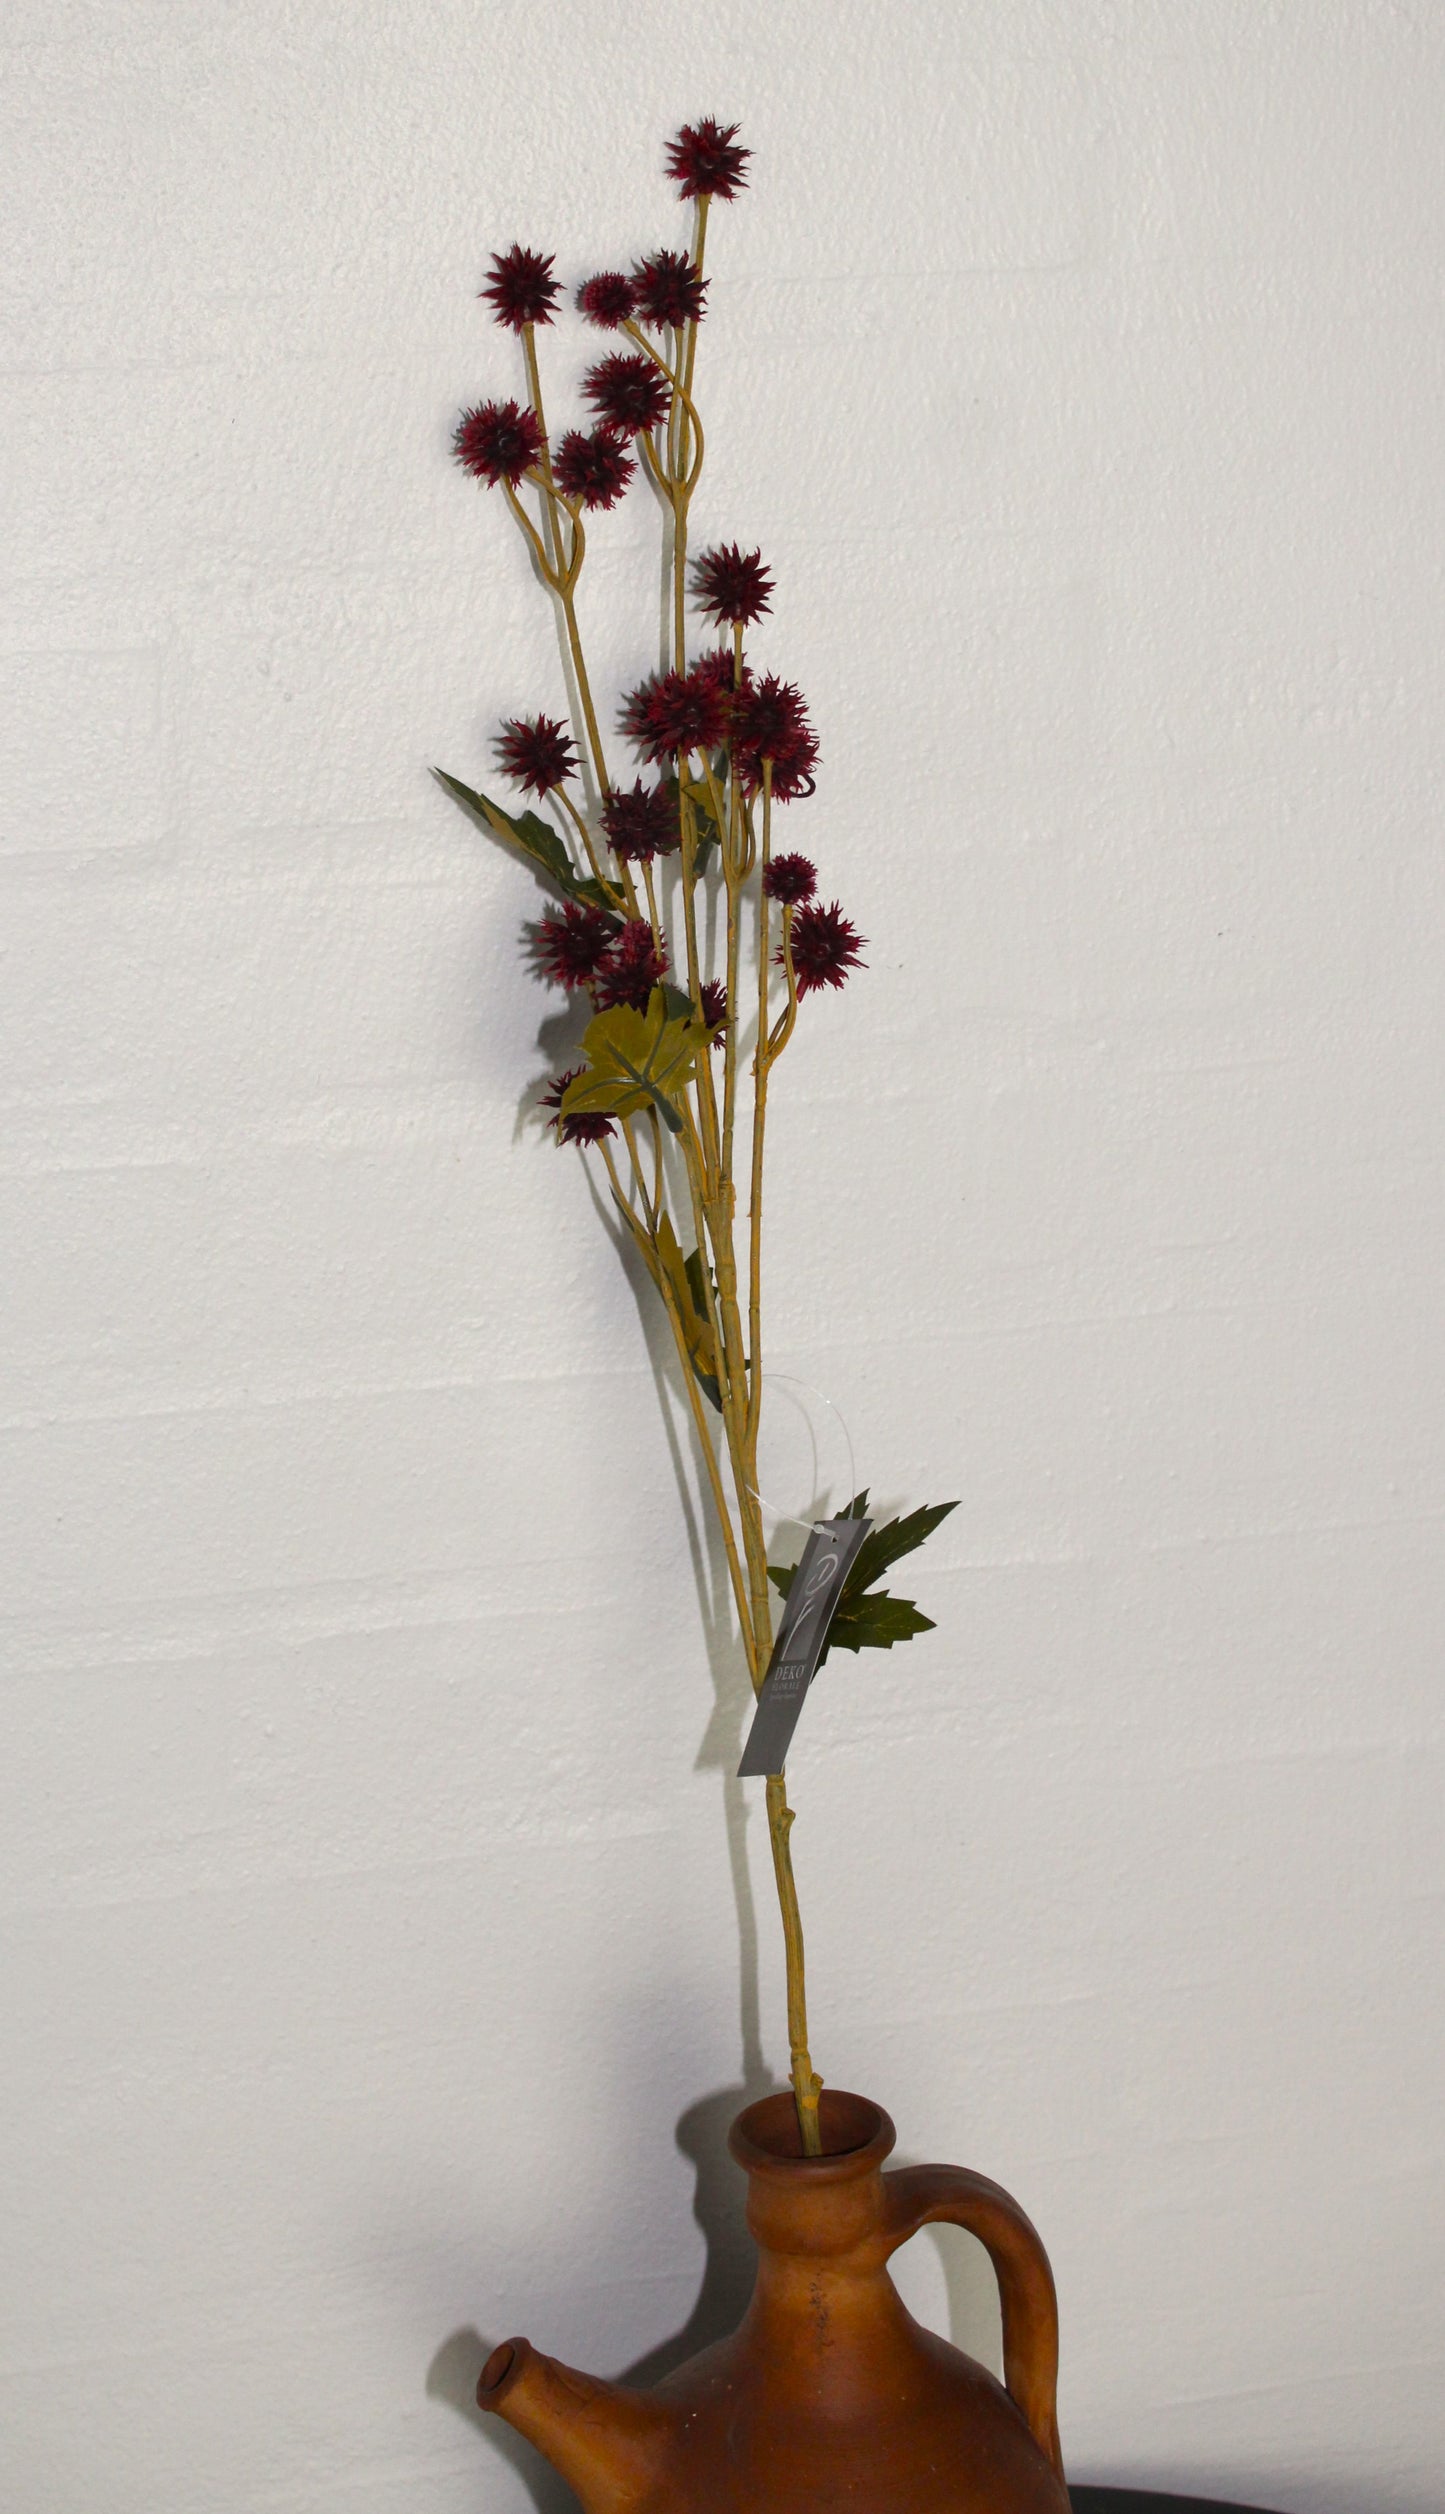 Deko Florale - 2 stk kunstig Sanikel stilk med små blomster, H 68 cm, bordeaux farve